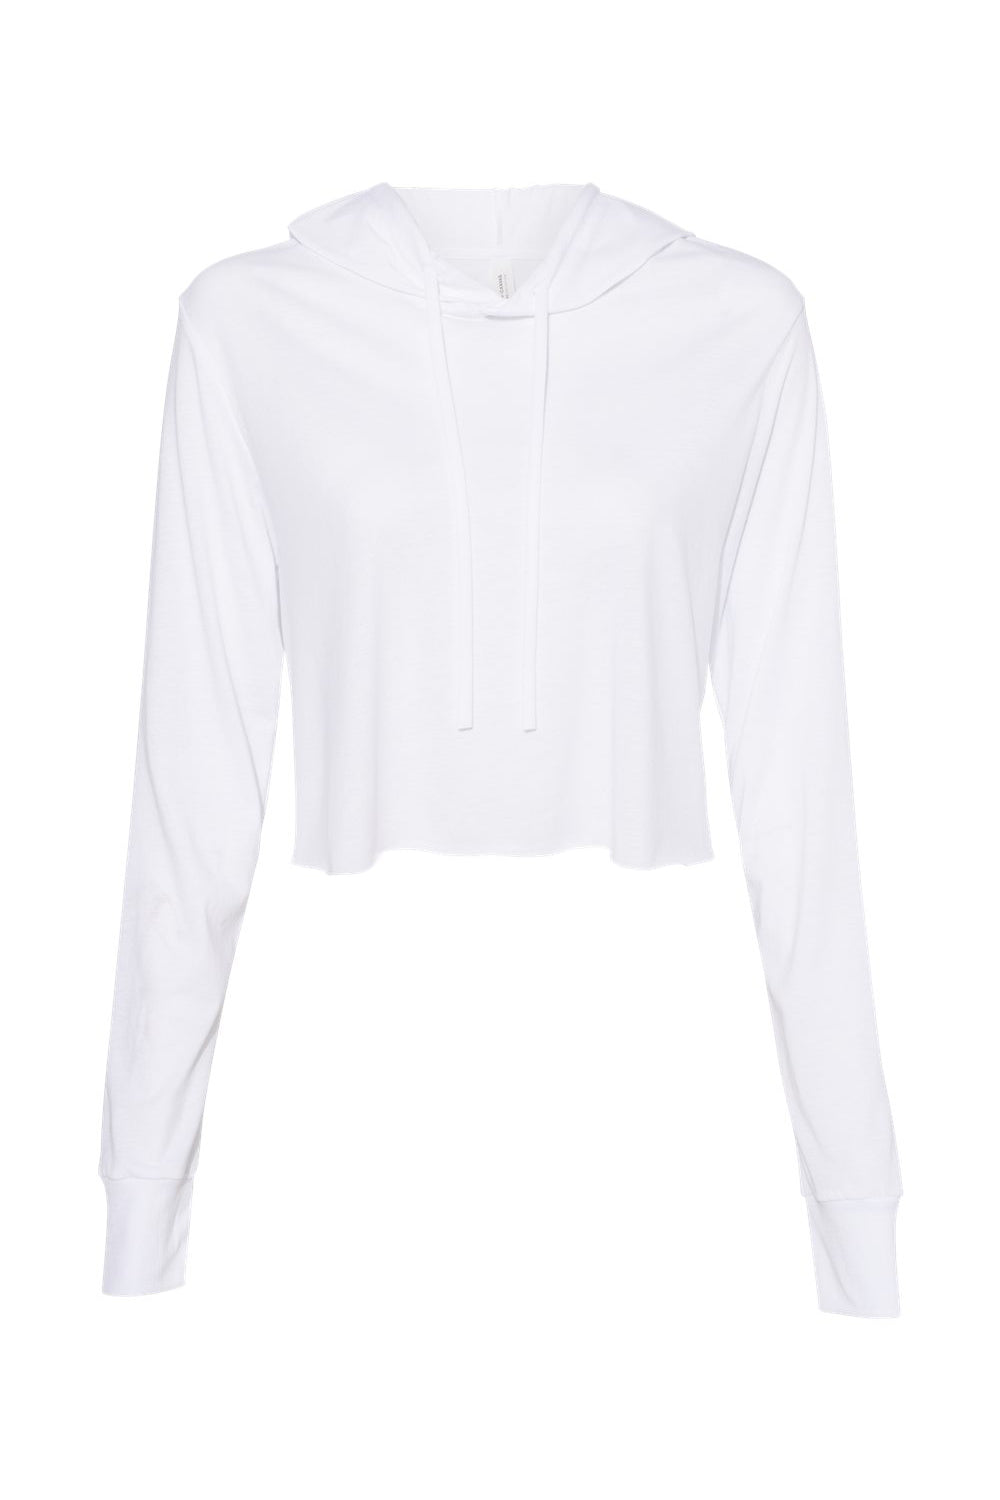 Bella + Canvas 8512 Womens Crop Long Sleeve Hooded Sweatshirt Hoodie Solid White Flat Front